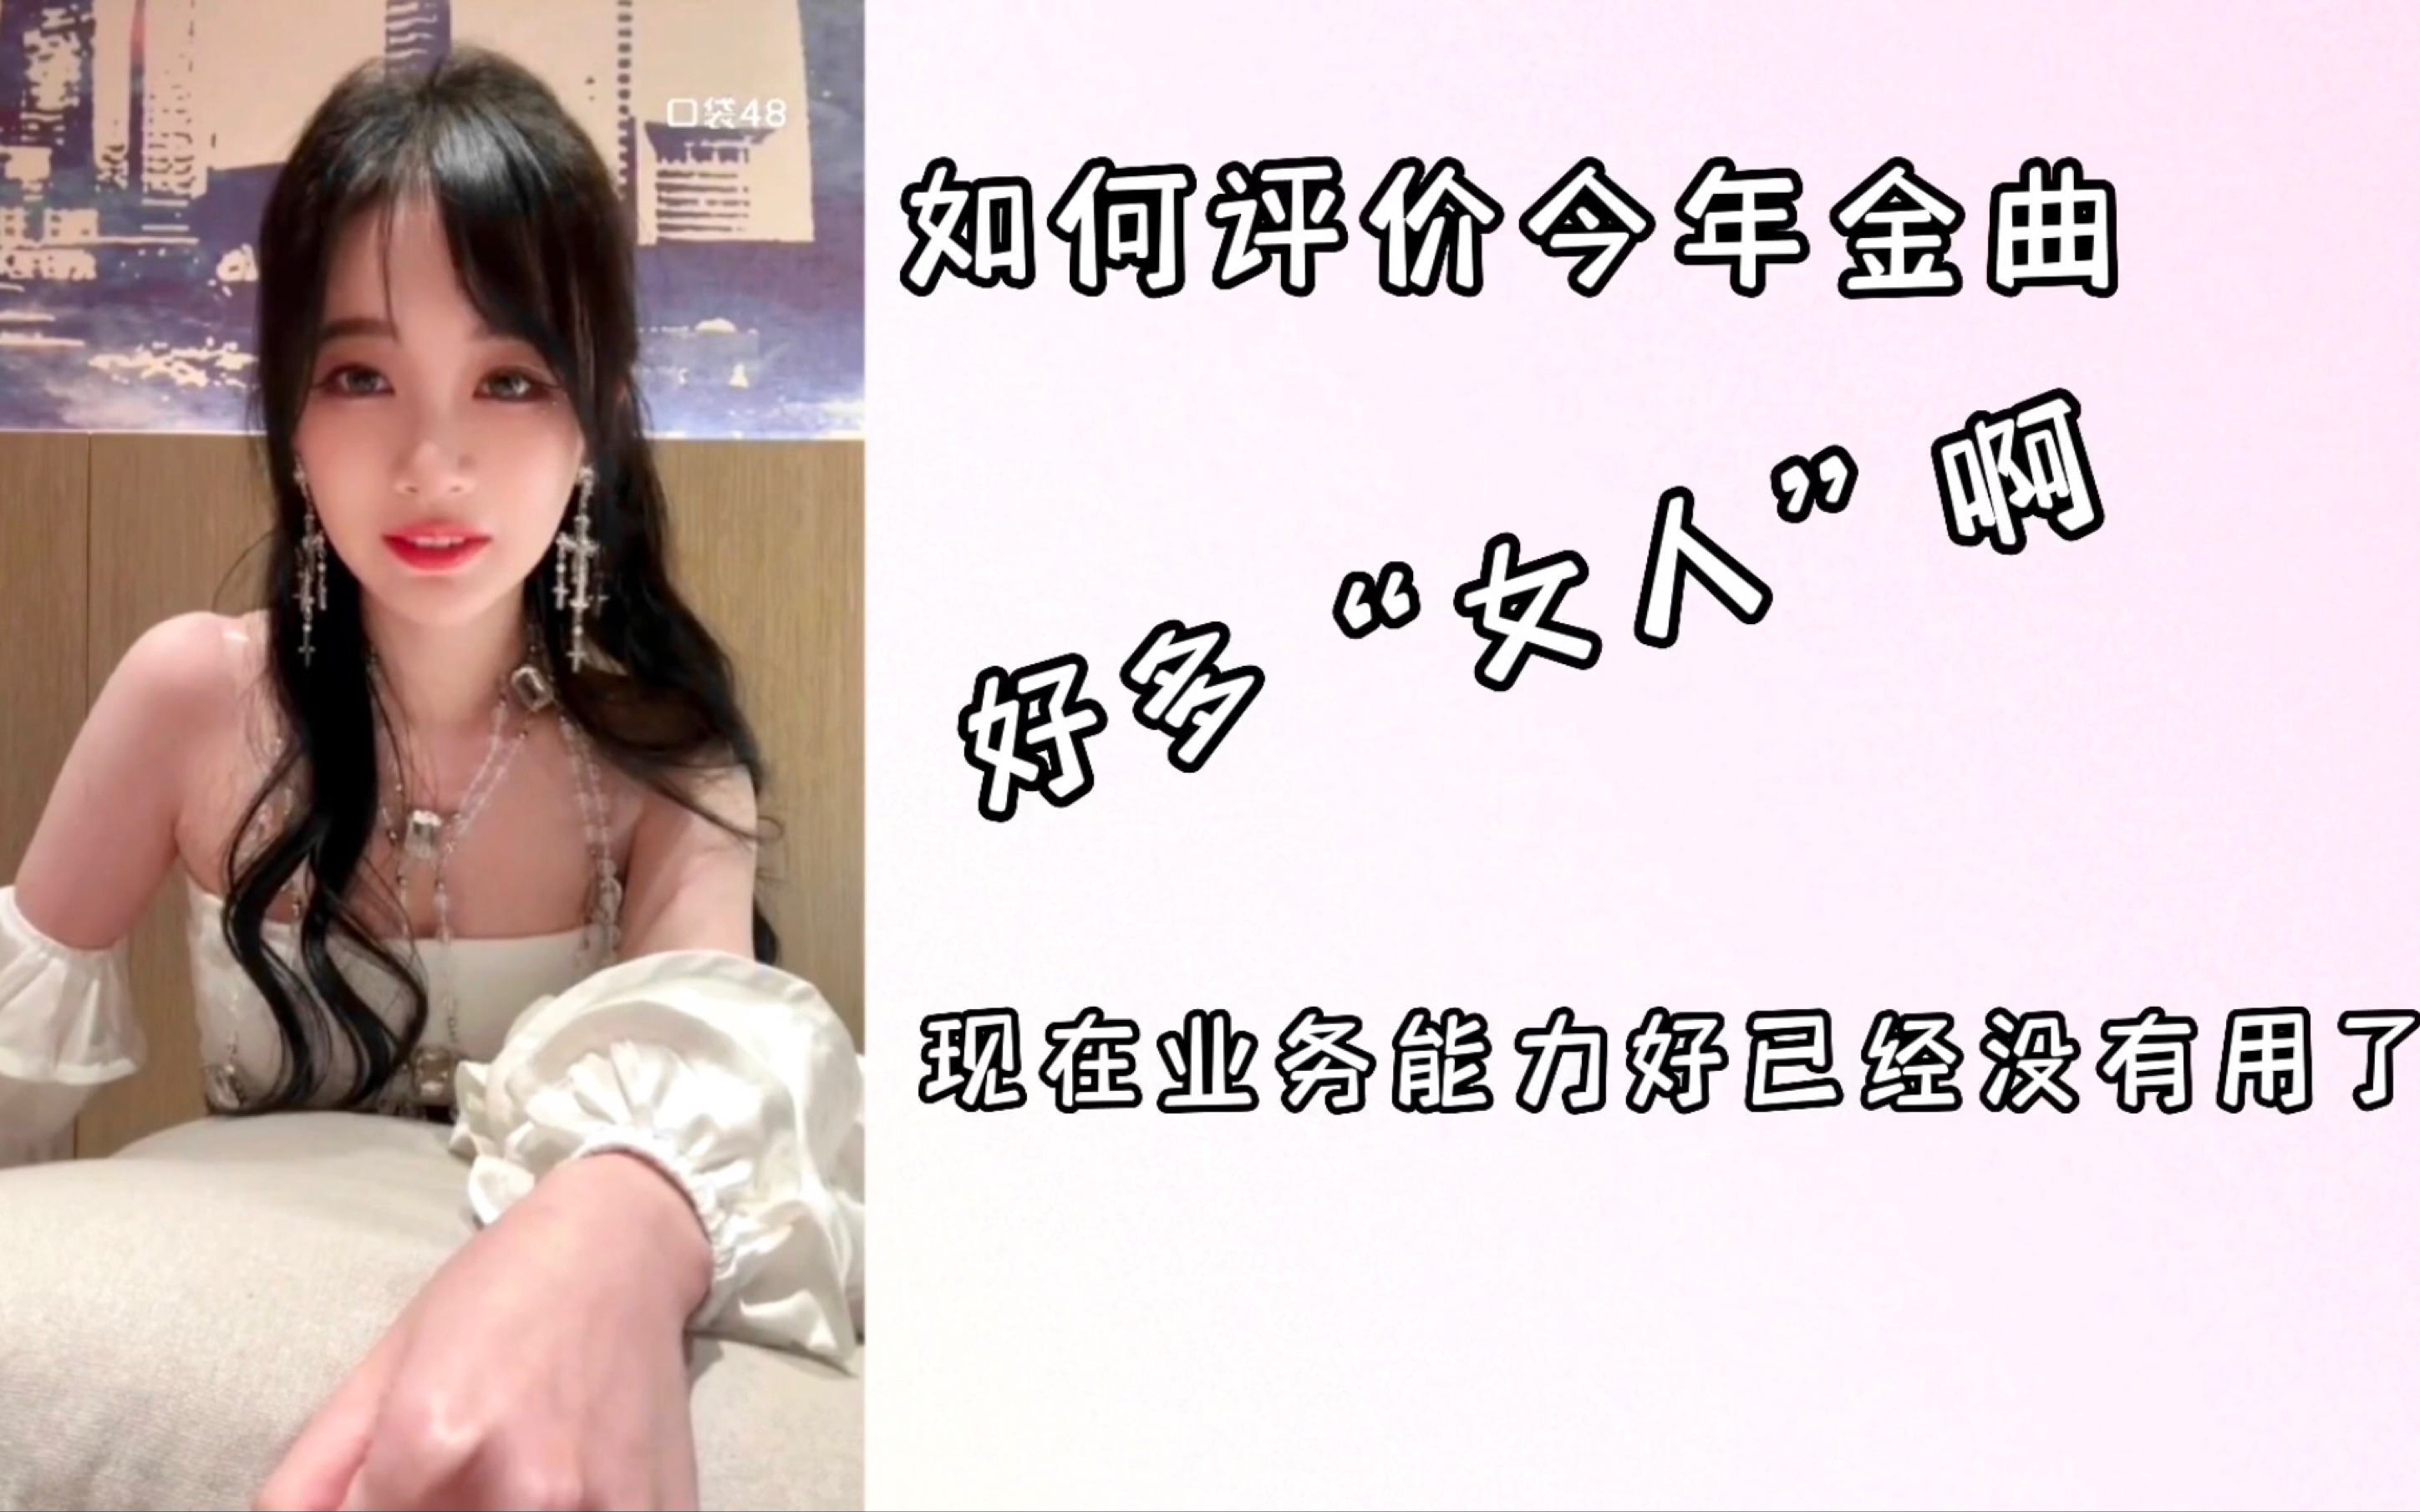 【刘增艳】台湾暴躁导播：“这人是谁啊，有人认识她吗，明天也是她上吗？”